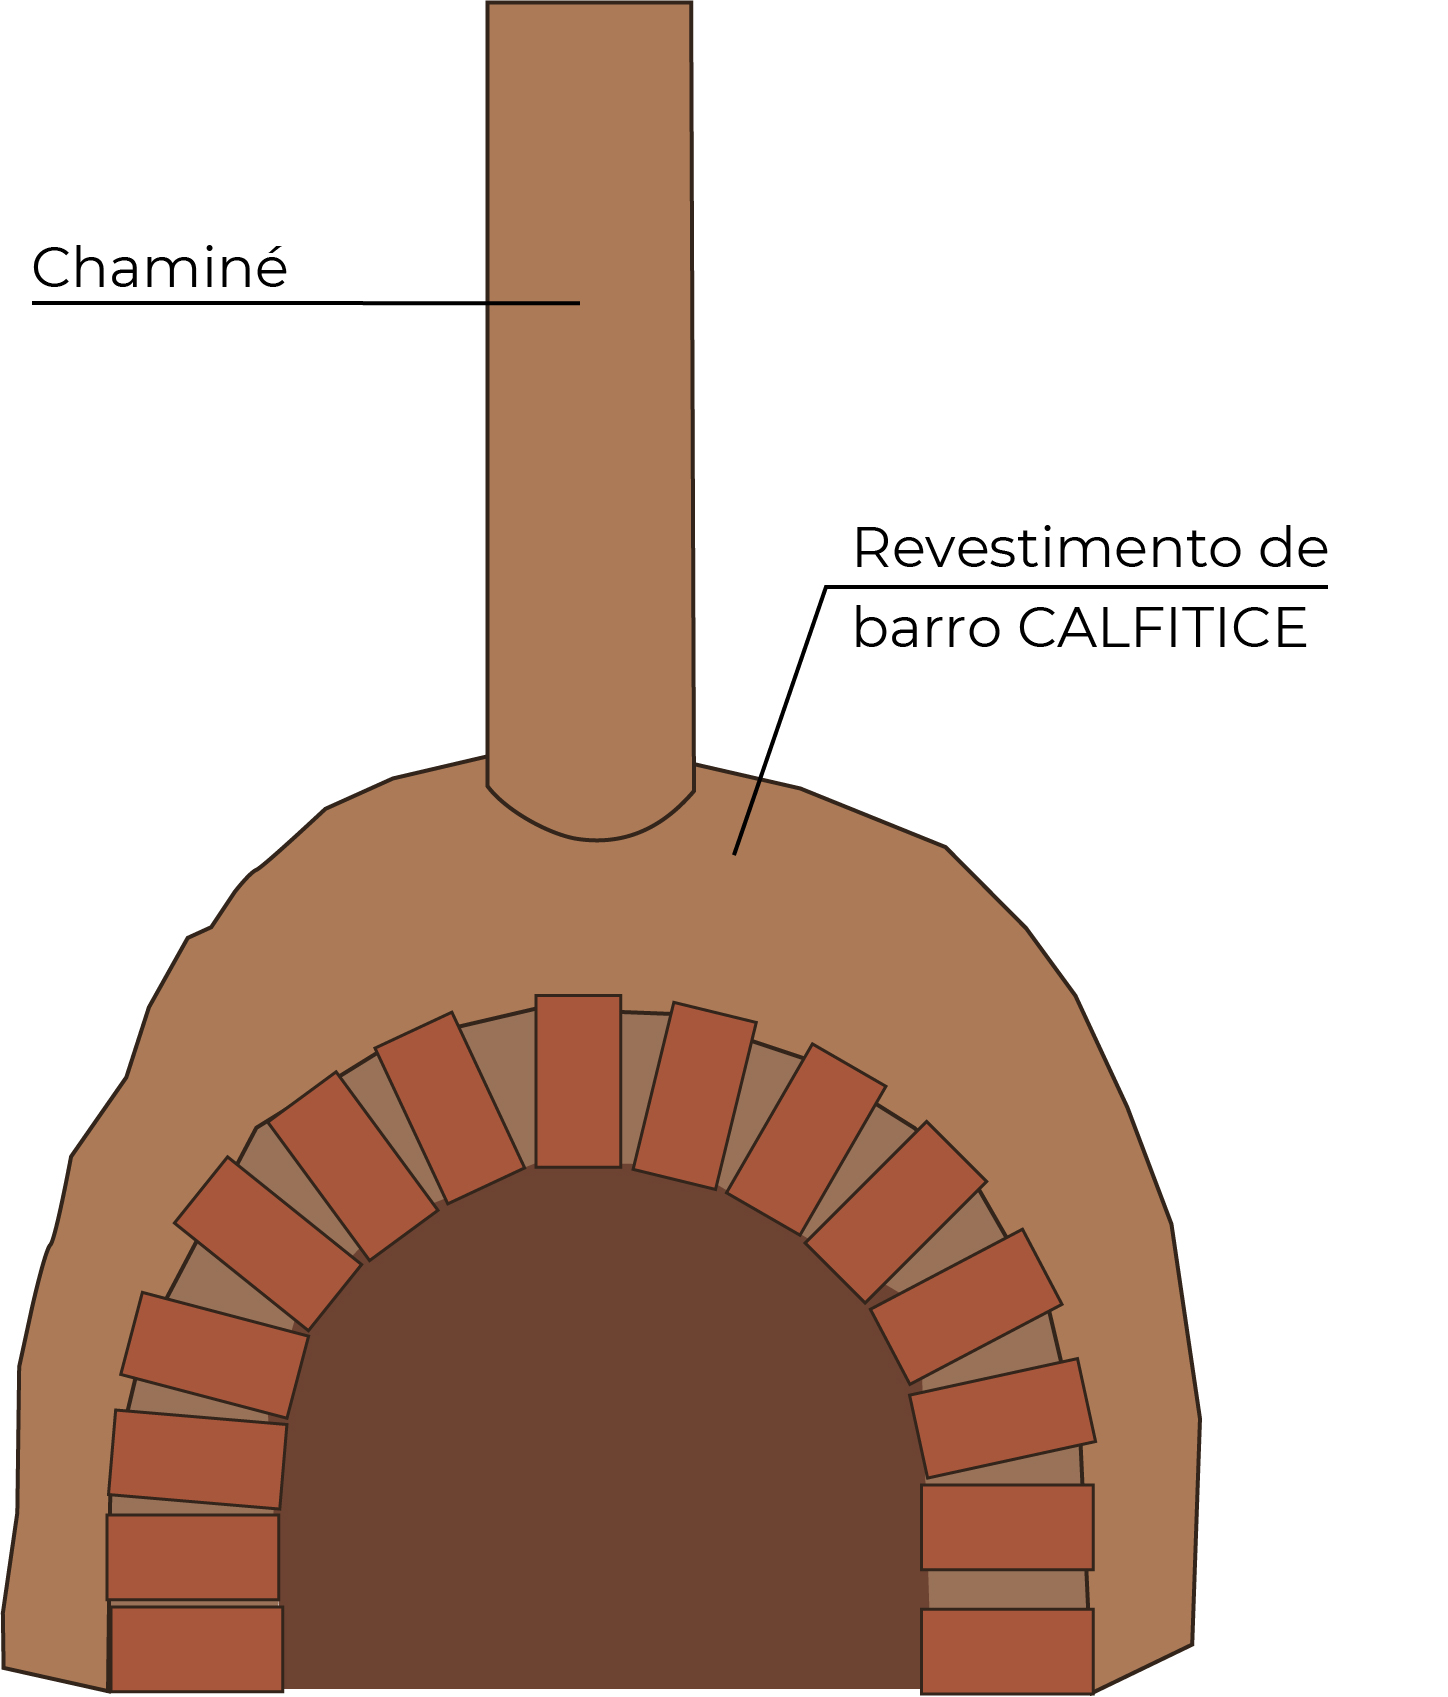 Ilustração de um forninho de barro completo, com o arco de abertura feito com 15 tijolos. Nele, estão sinalizados a chaminé e o revestimento de calfitice.